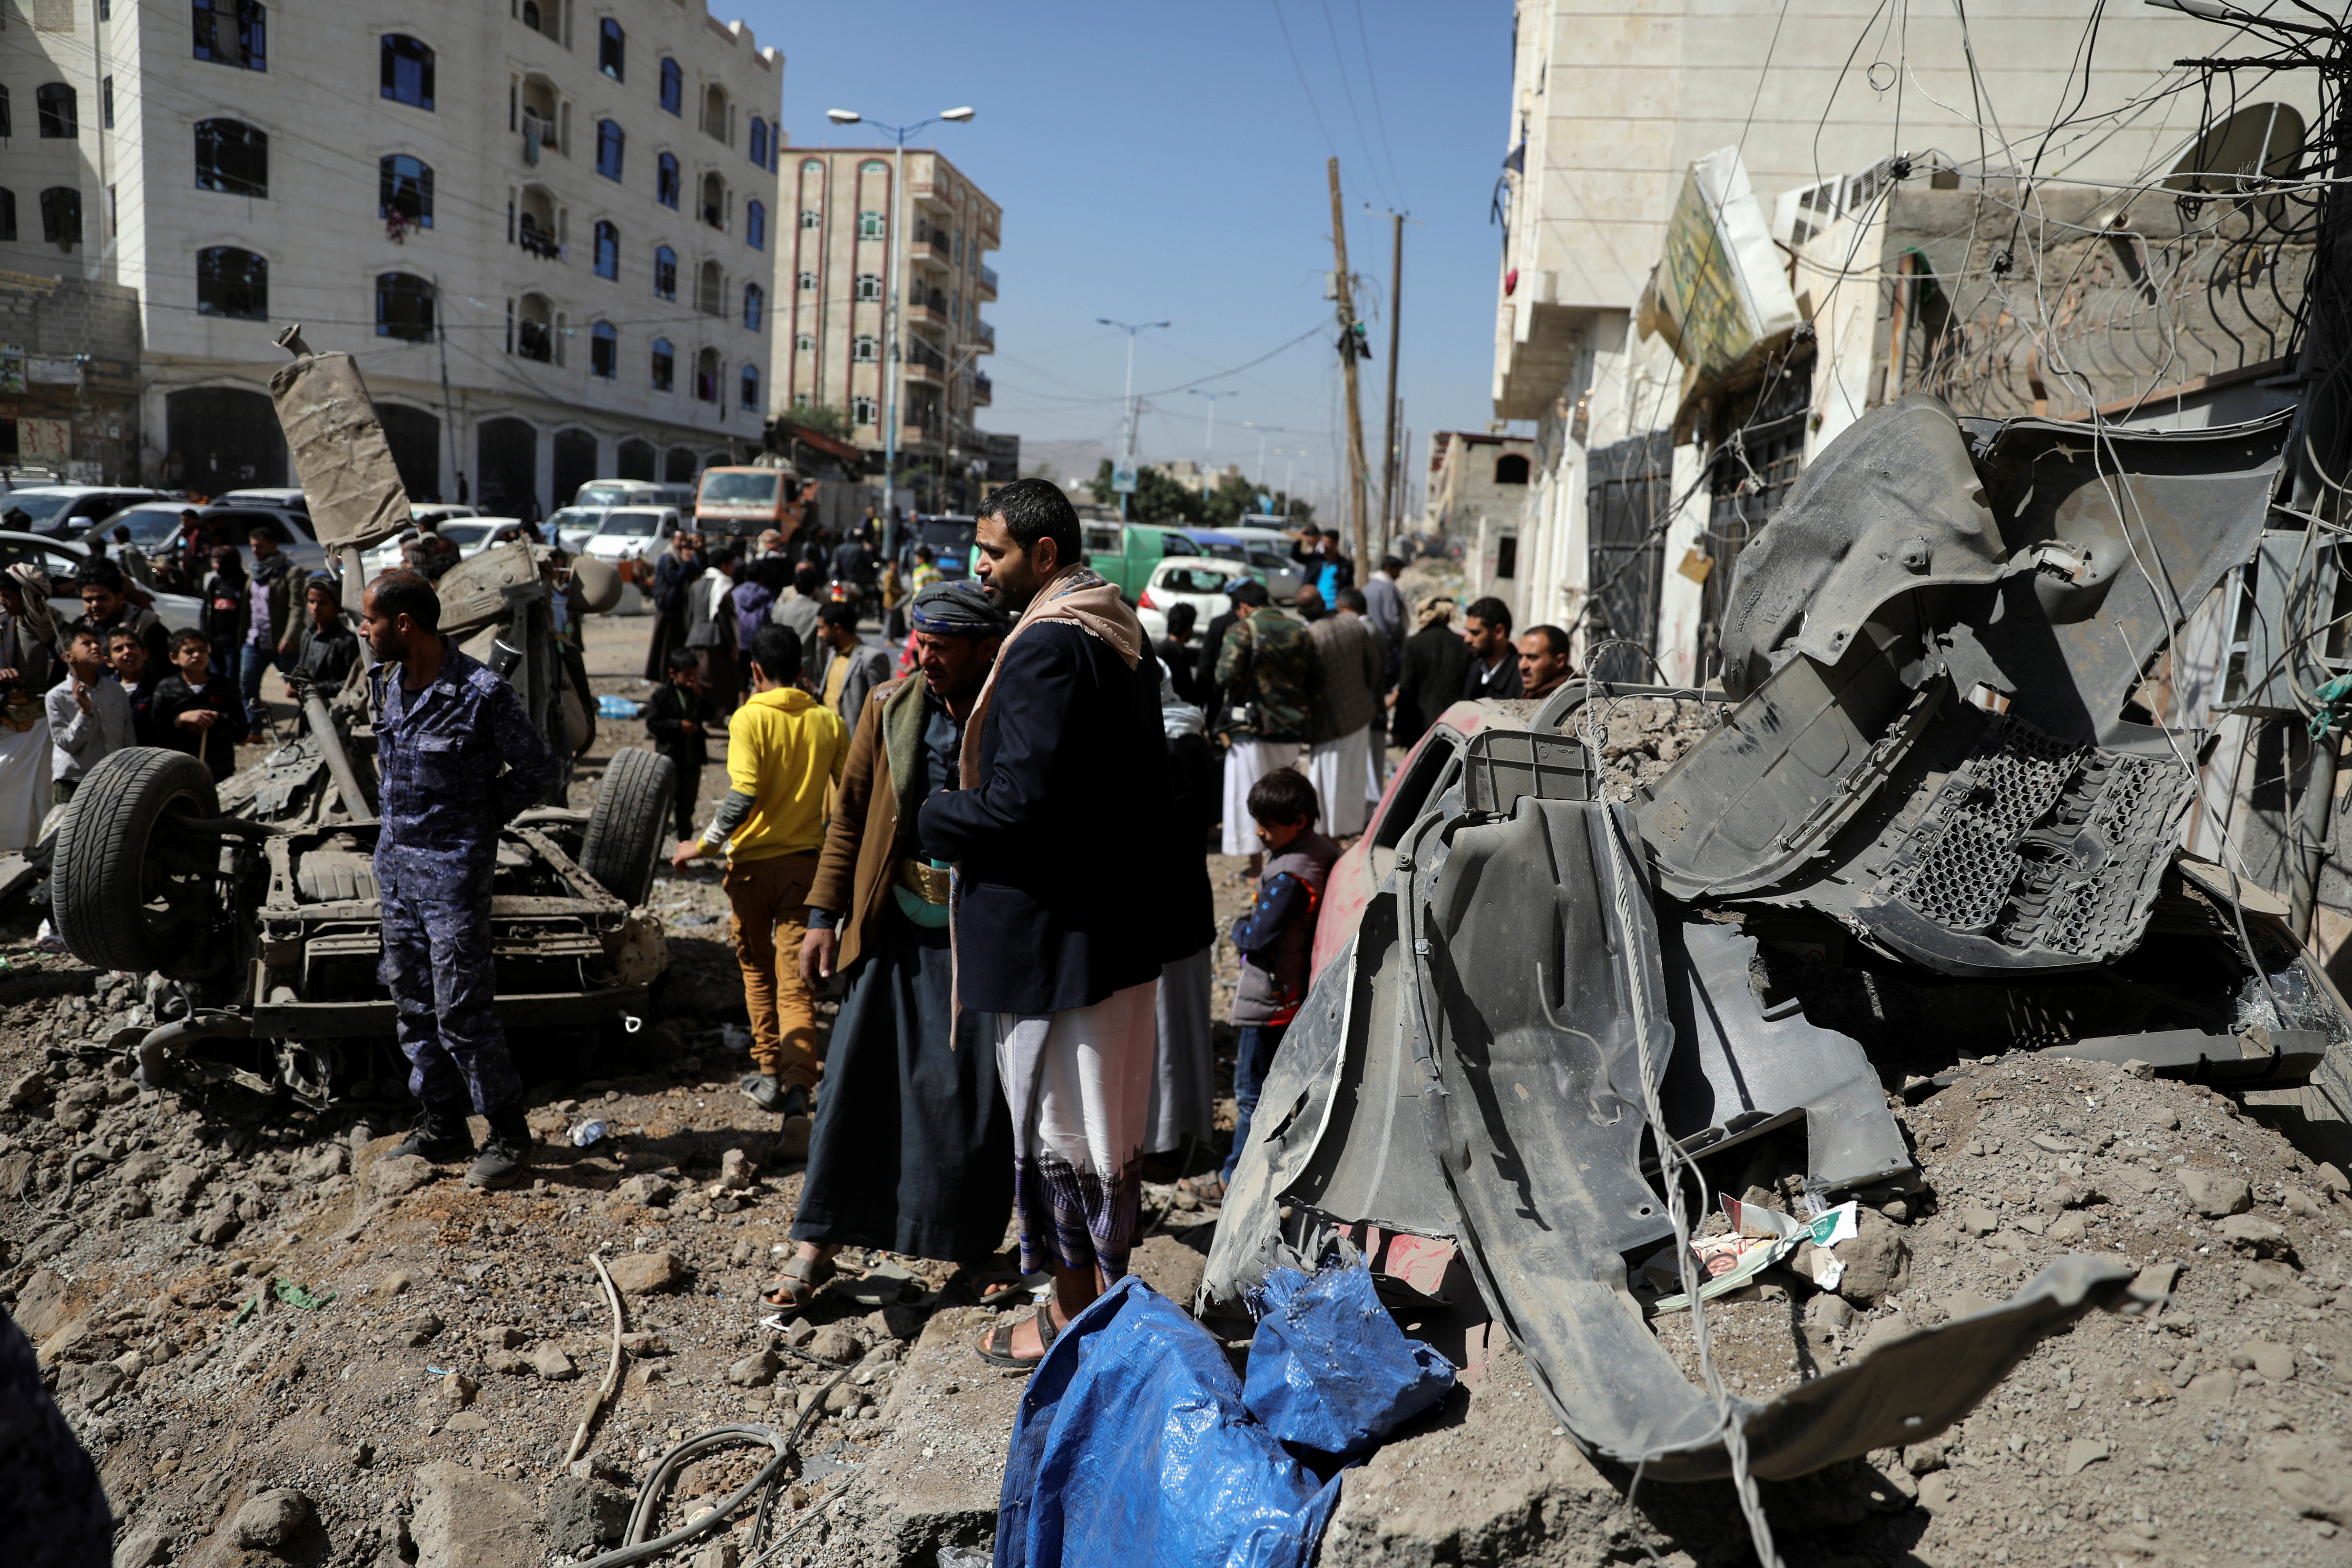 Escombros y chatarra que dejó el bombardeo de la coalición árabe a posiciones de la Guardia Revolucionaria iraní y el Hezbollah en Sanaa, Yemen. REUTERS/Khaled Abdullah